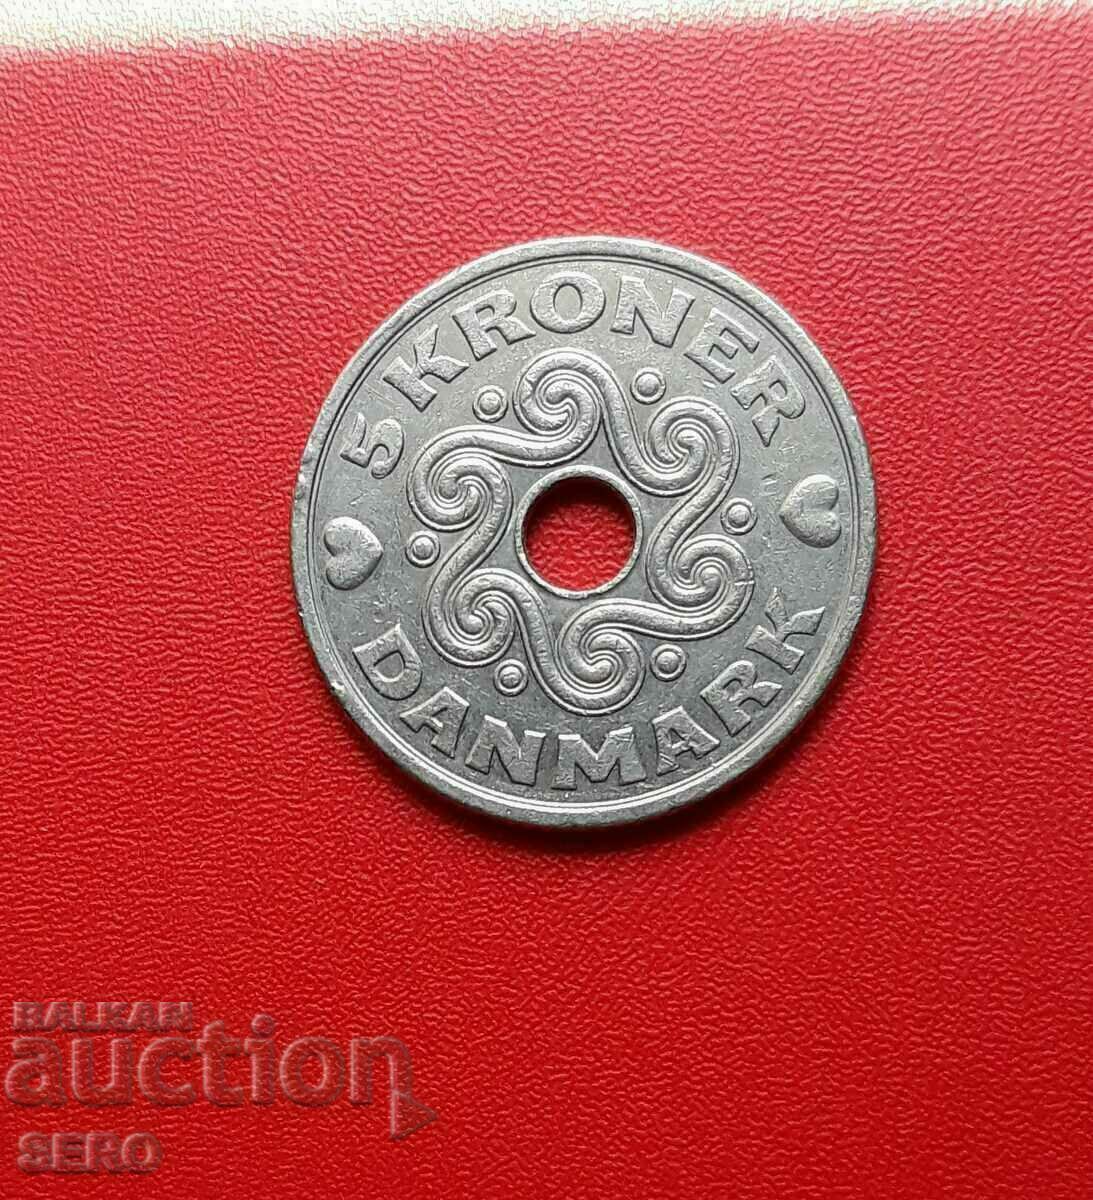 Denmark-5 kroner 1994